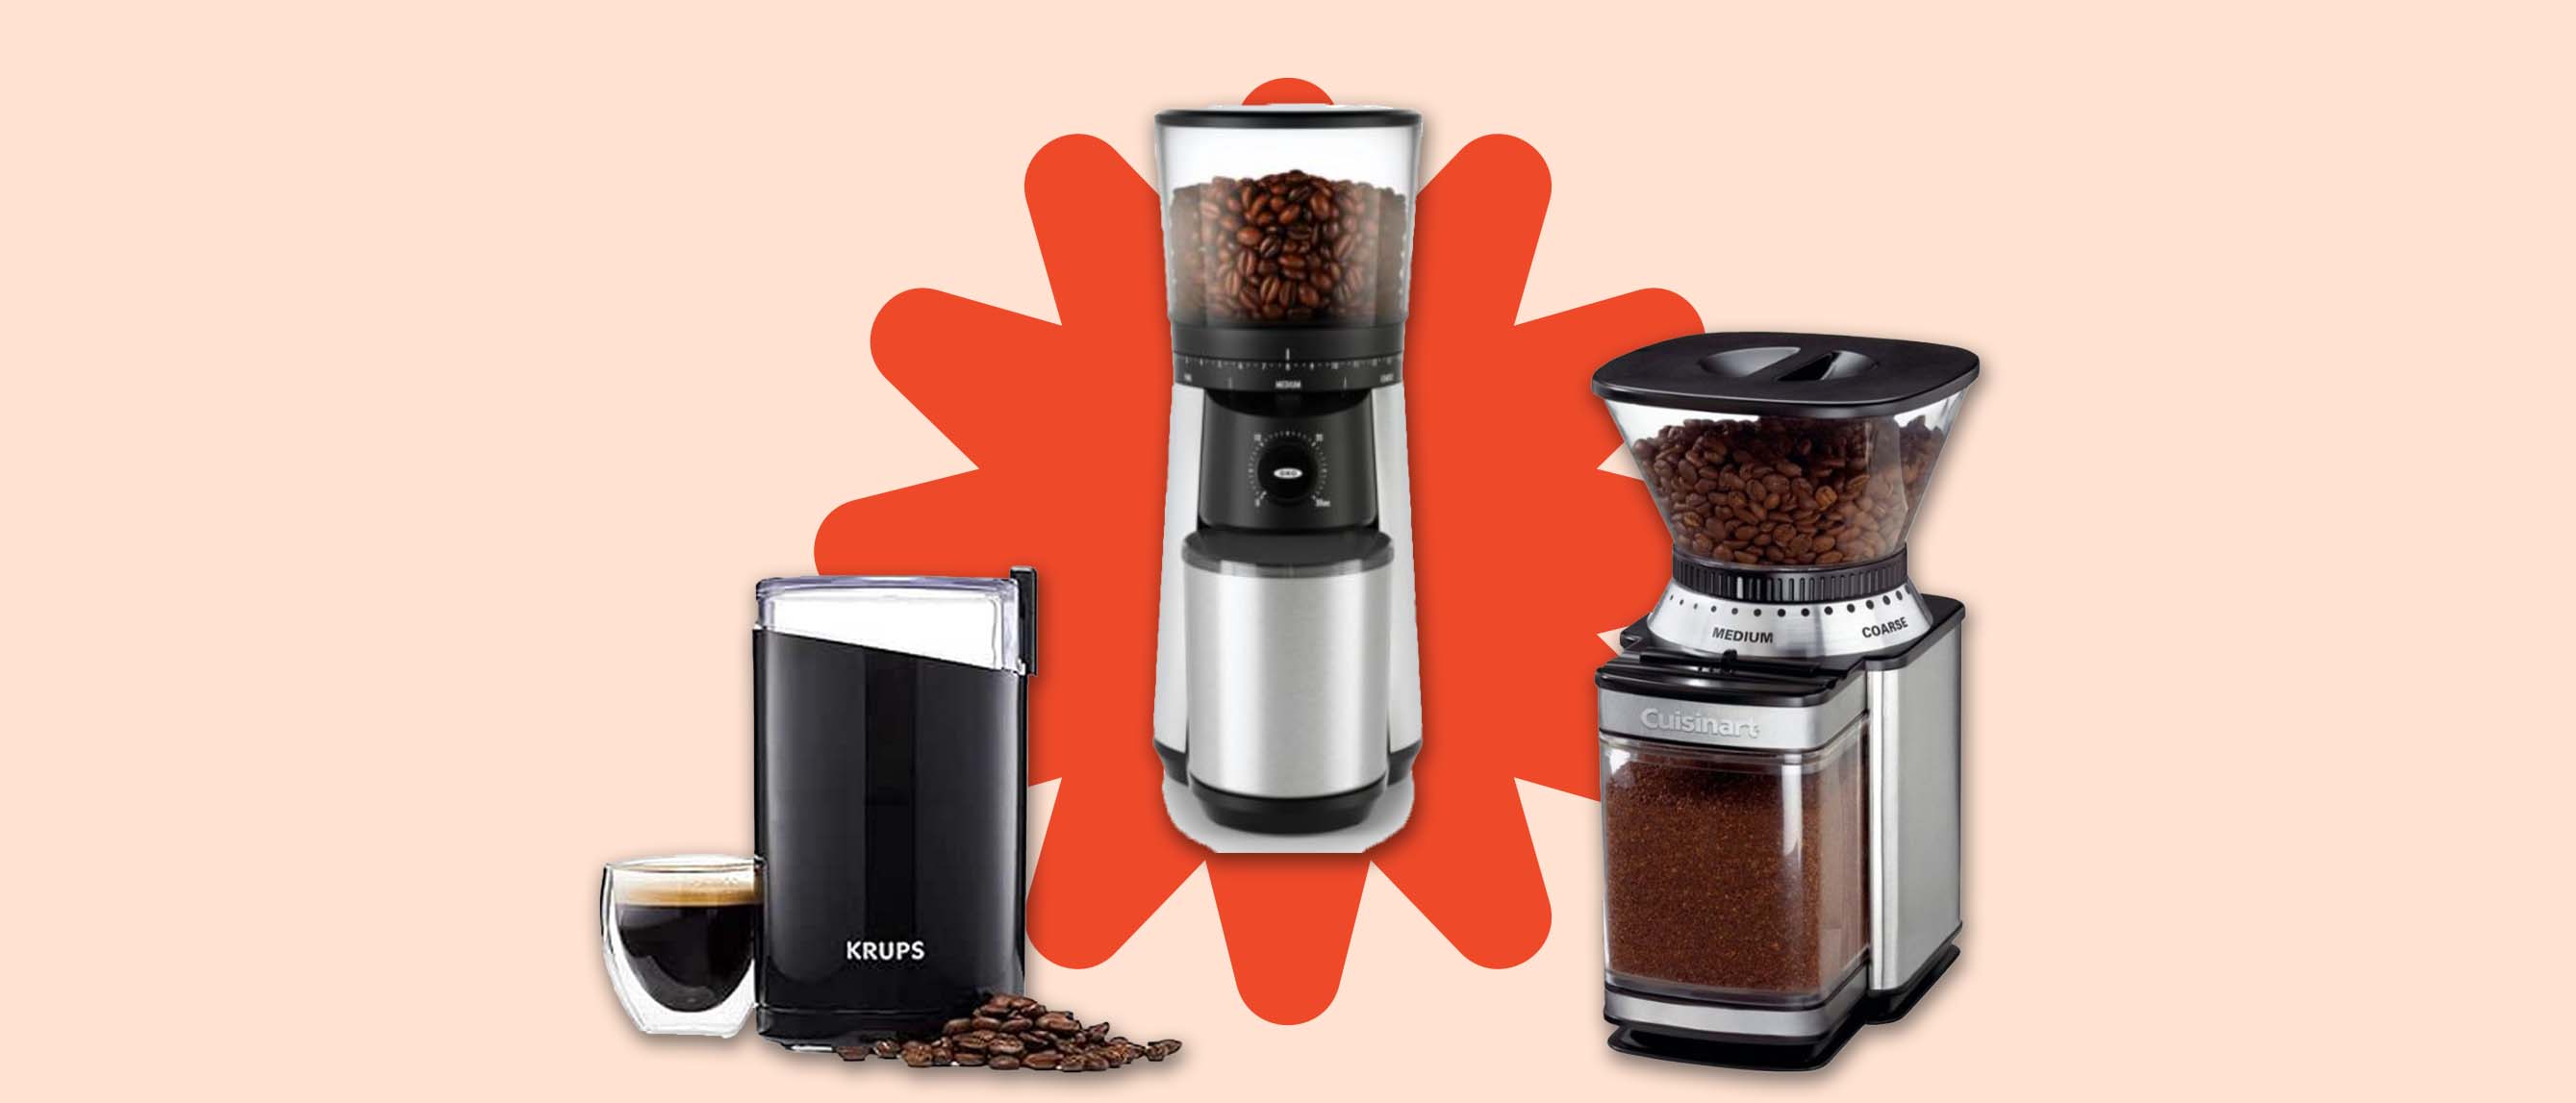 Image of three coffee grinders